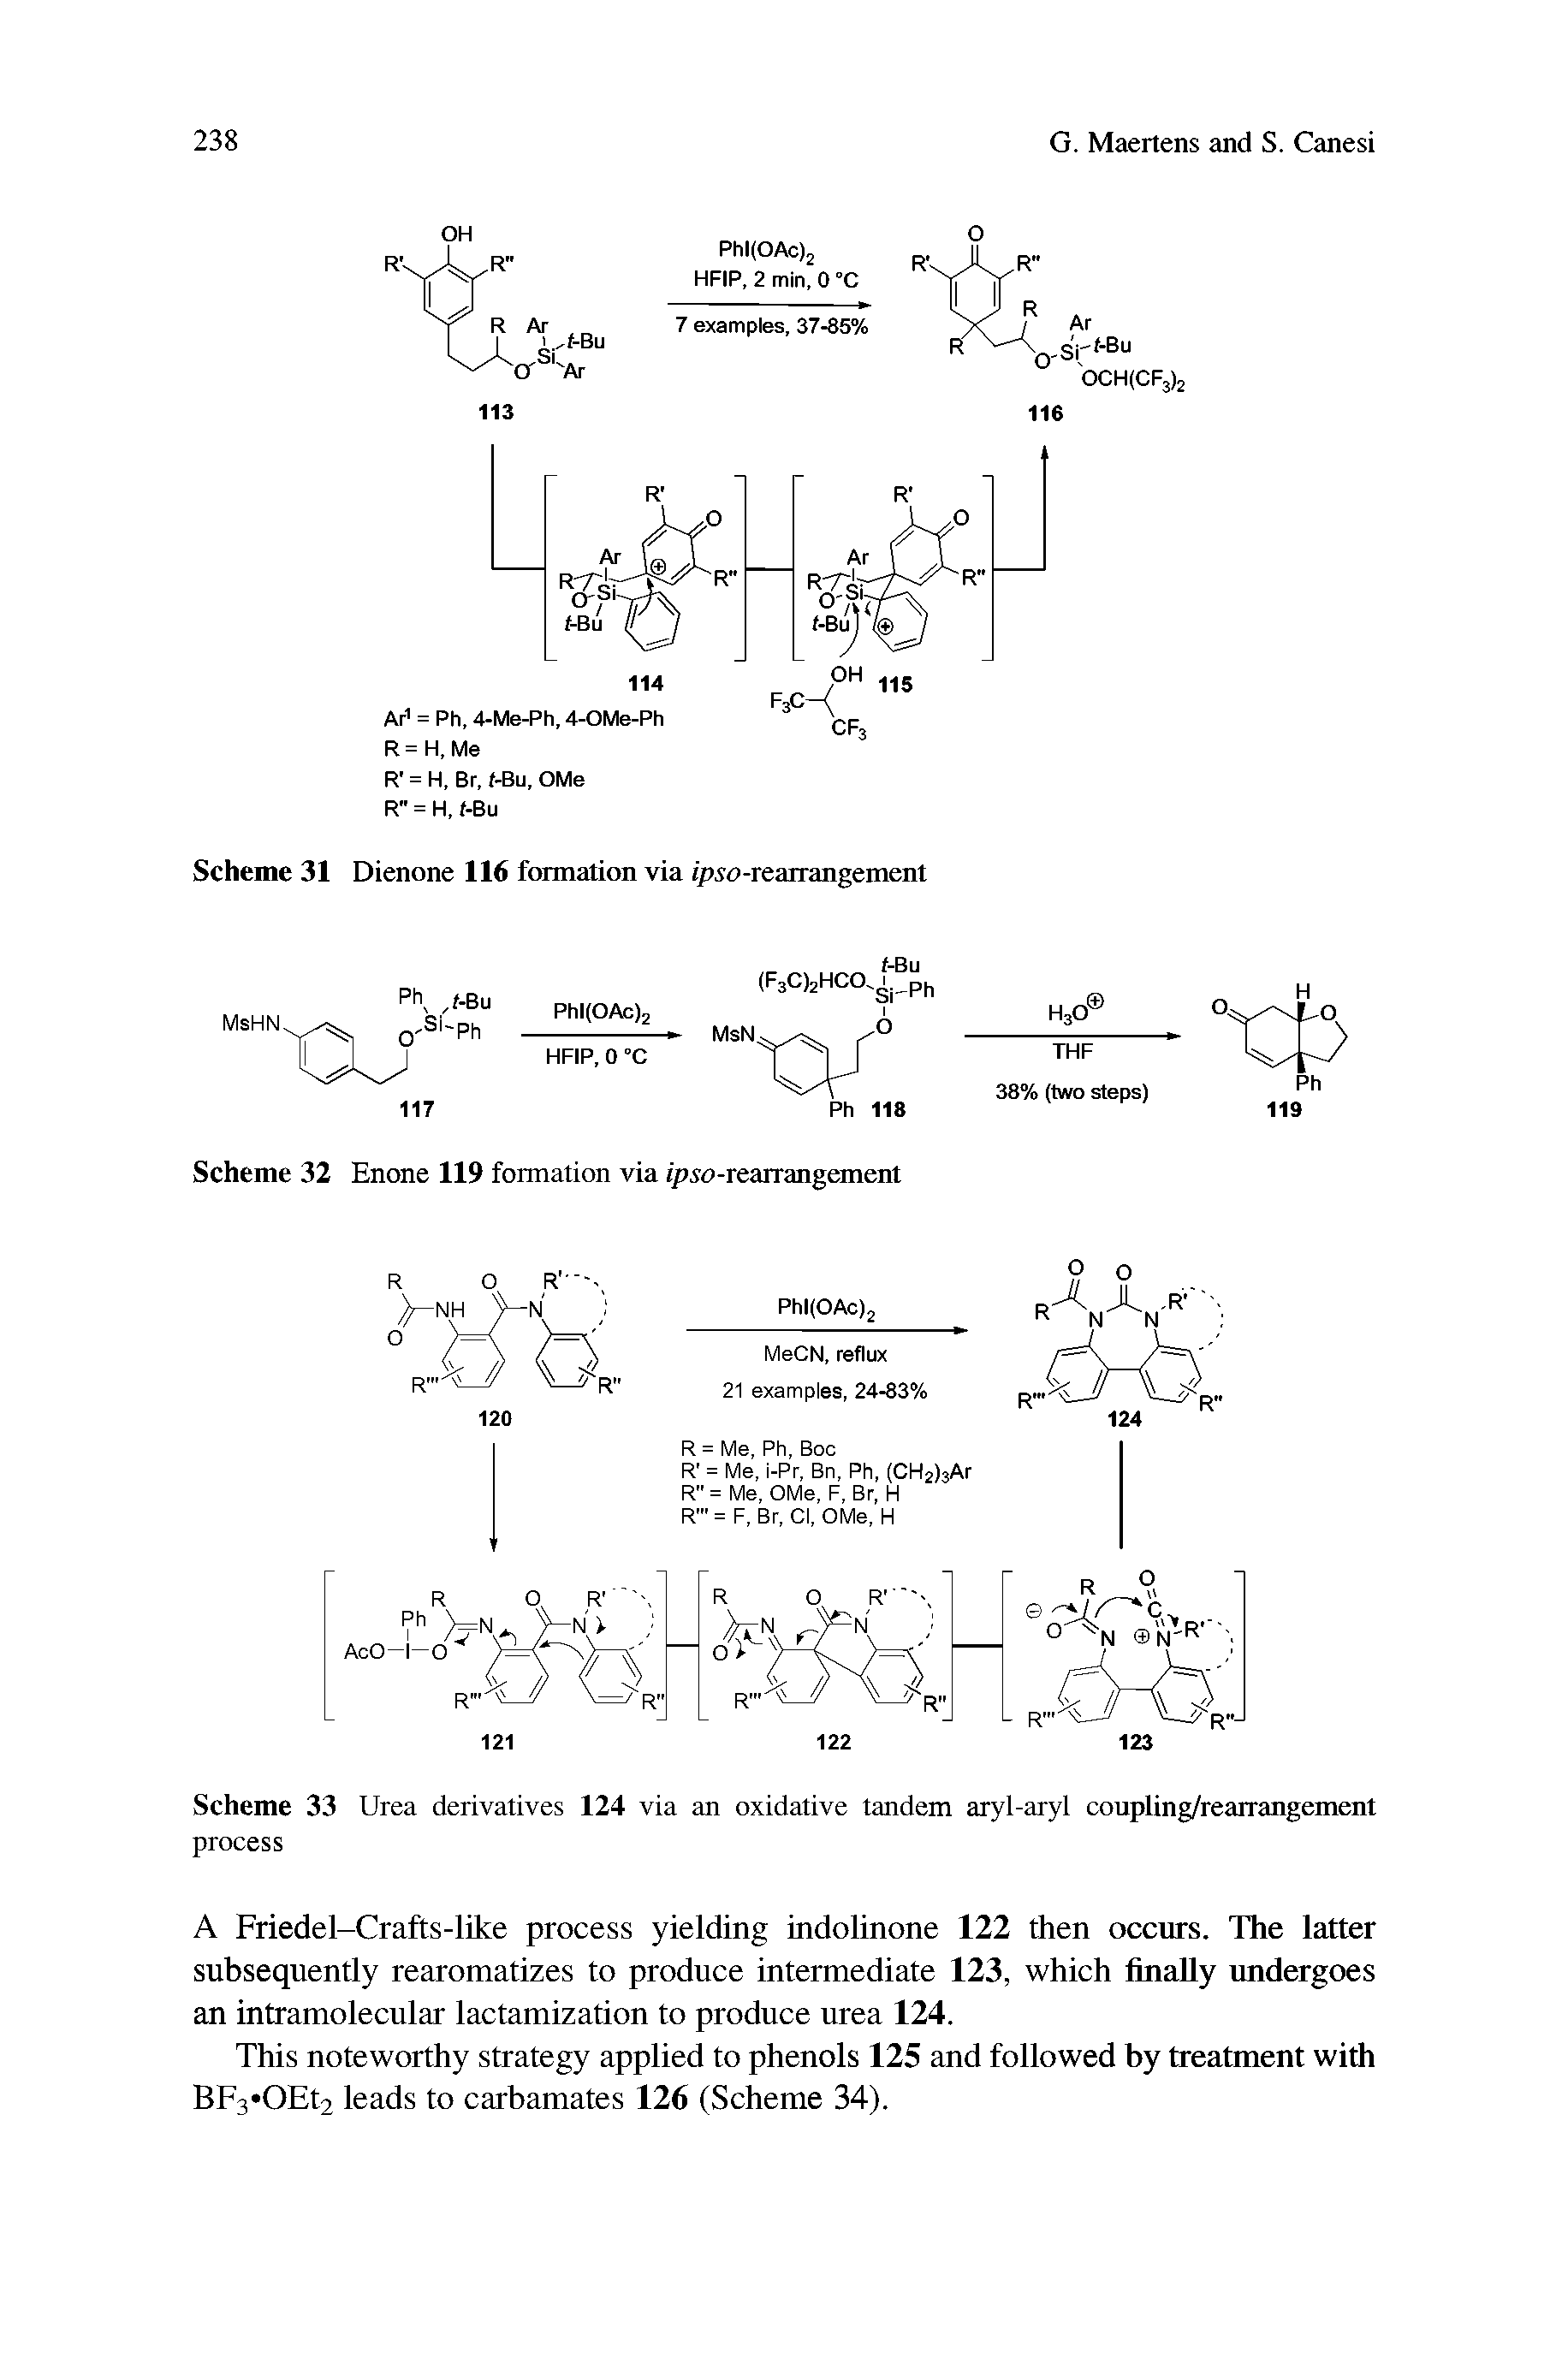 Scheme 33 Urea derivatives 124 via an oxidative tandem aryl-aryl coupling/rearrangement process...